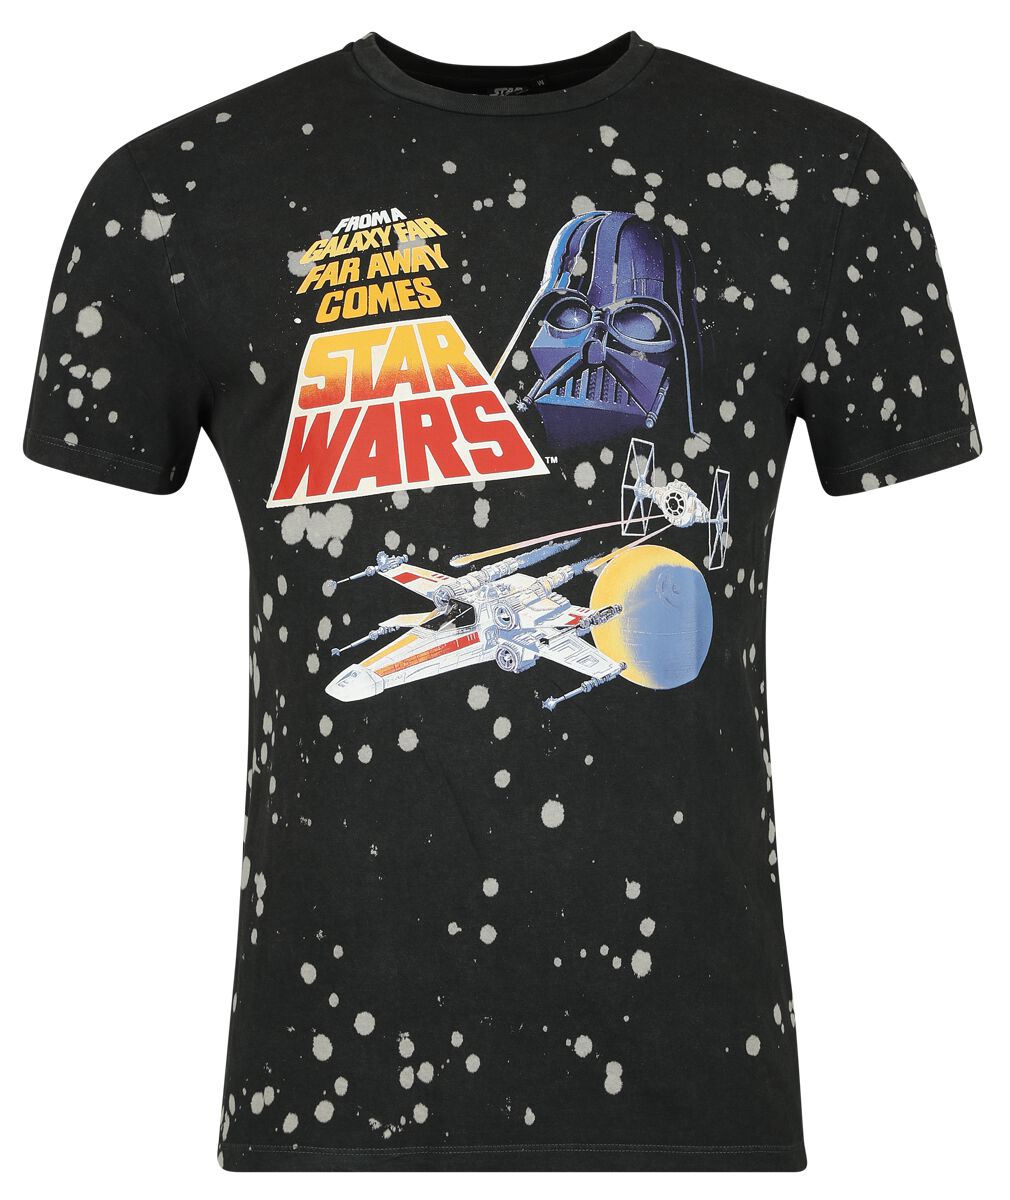 Star Wars T-Shirt - Classic - Space - S bis XXL - für Männer - Größe XXL - schwarz  - Lizenzierter Fanartikel